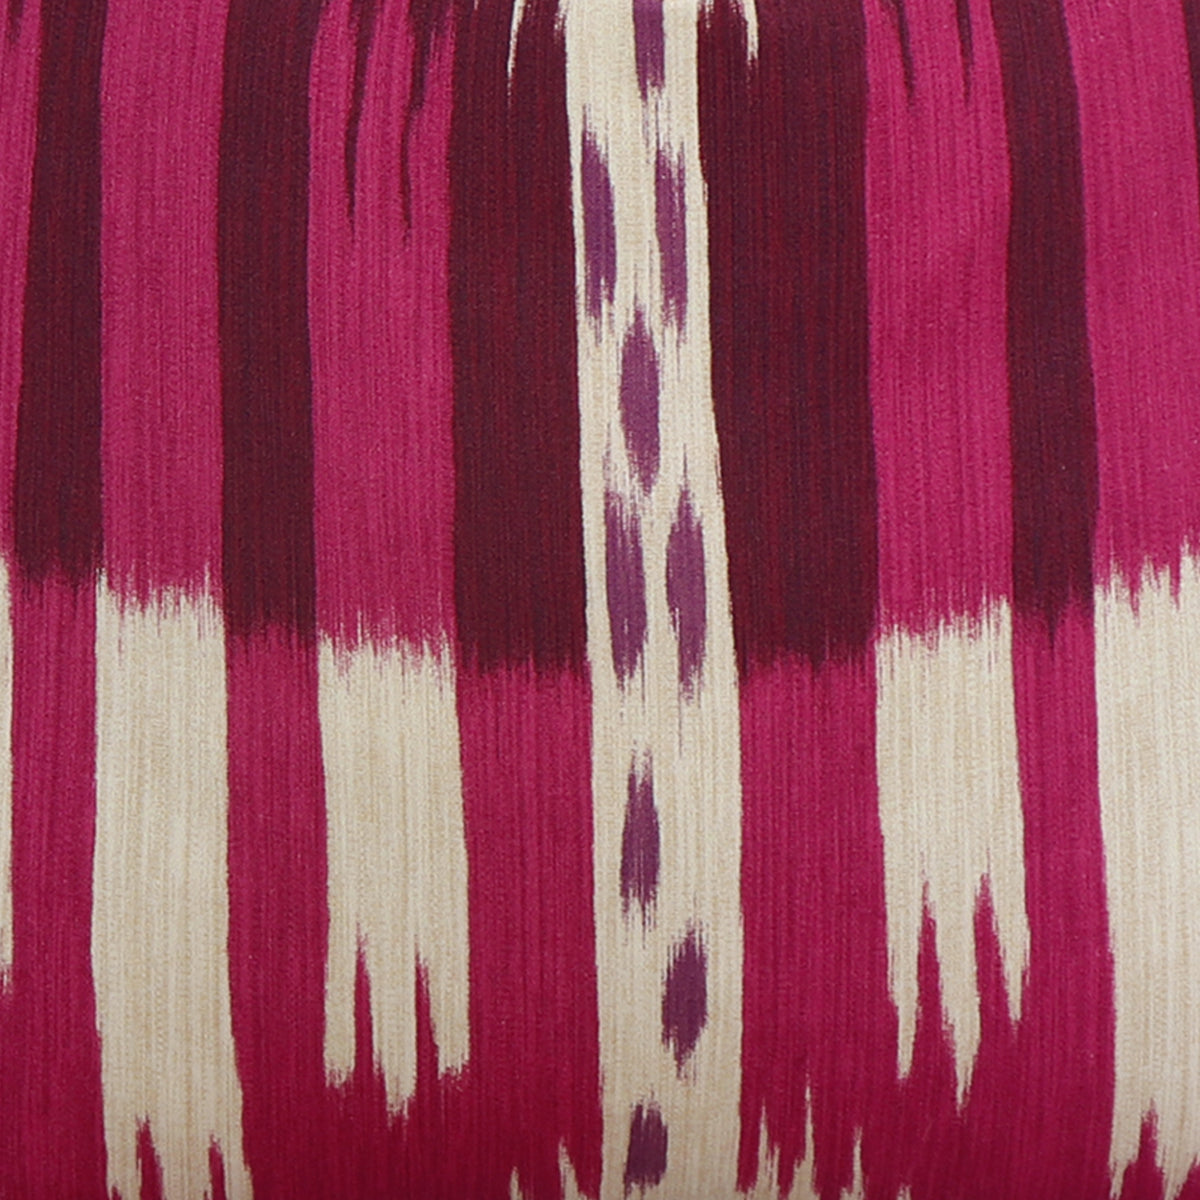 Bukhara Fuchsia / 4x4 inch Fabric Swatch